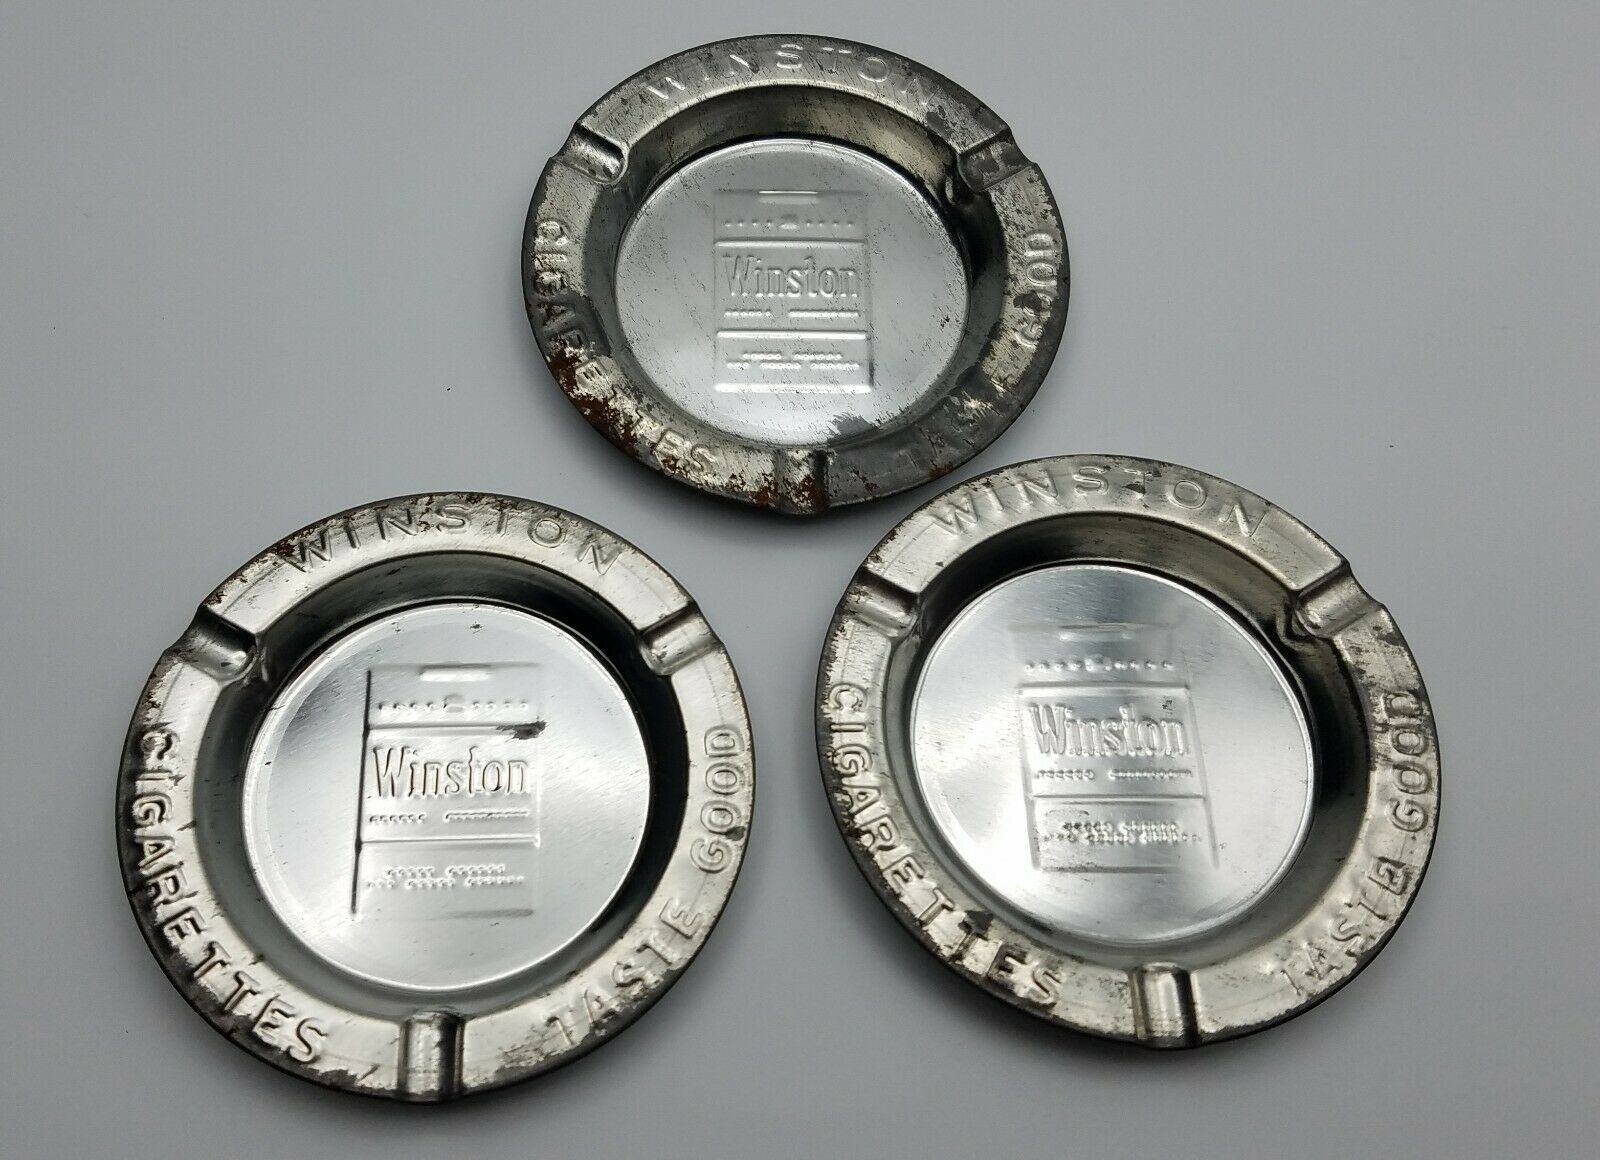 WINSTON CIGARETTES TASTE GOOD Vintage Tin Metal Ashtrays 3.5" SET OF 3 Free Ship - $16.78